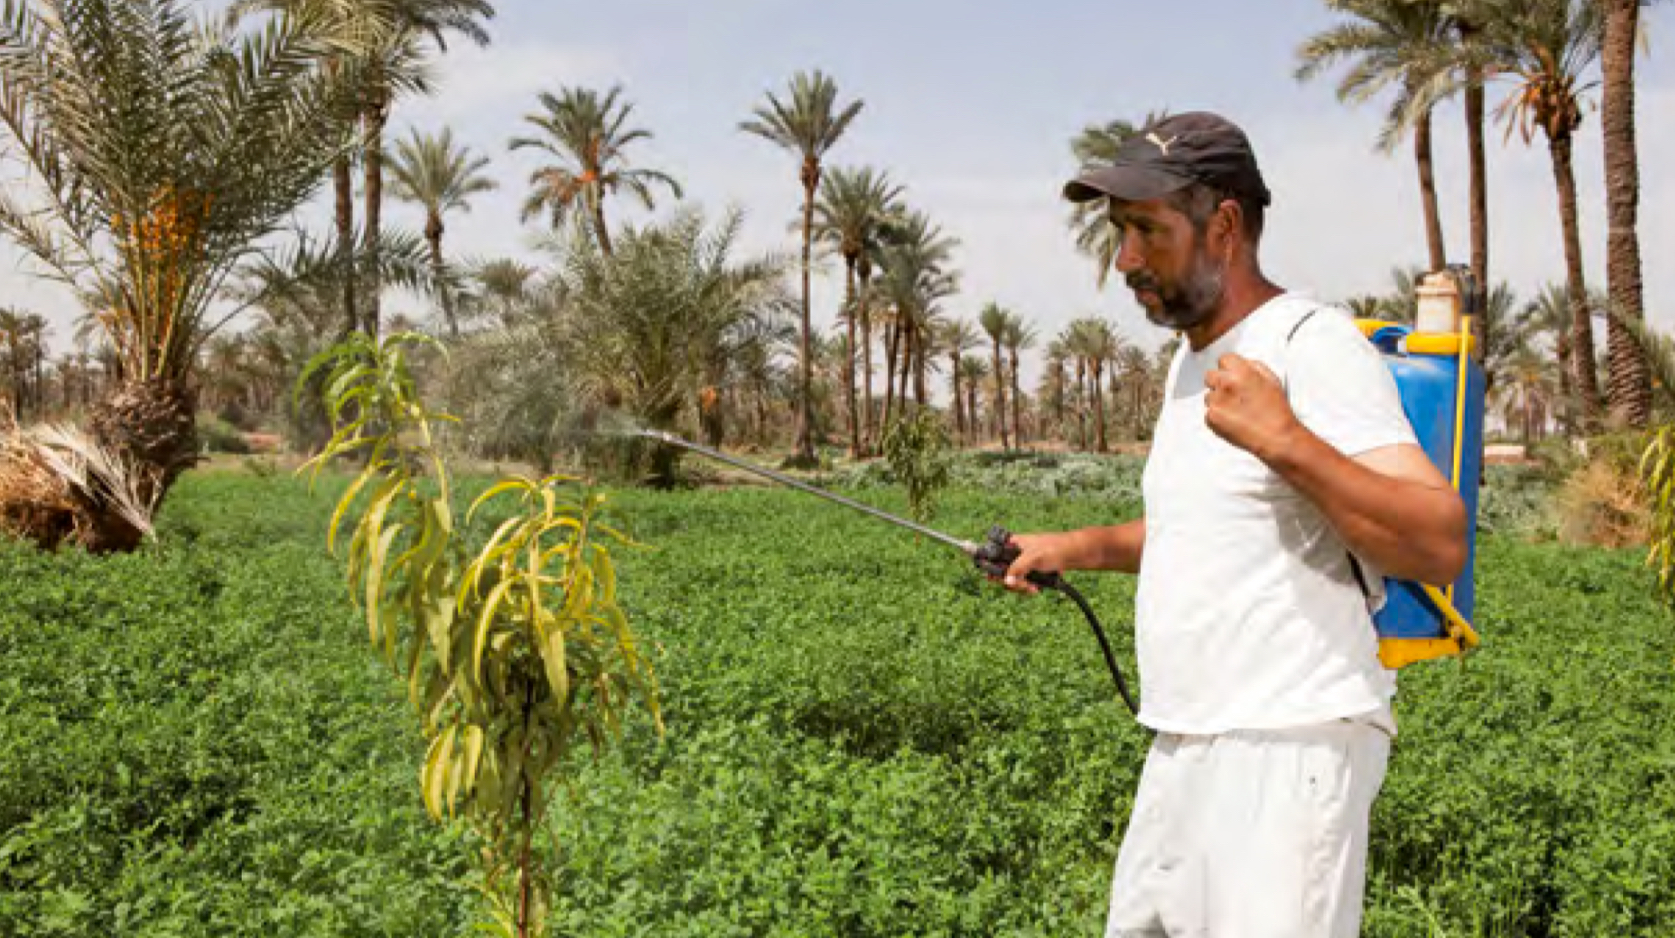 Un projet IT SOLIDAIRE développé au Maroc par la Fondation Norsys pour faciliter la commercialisation de produits agroécologiques